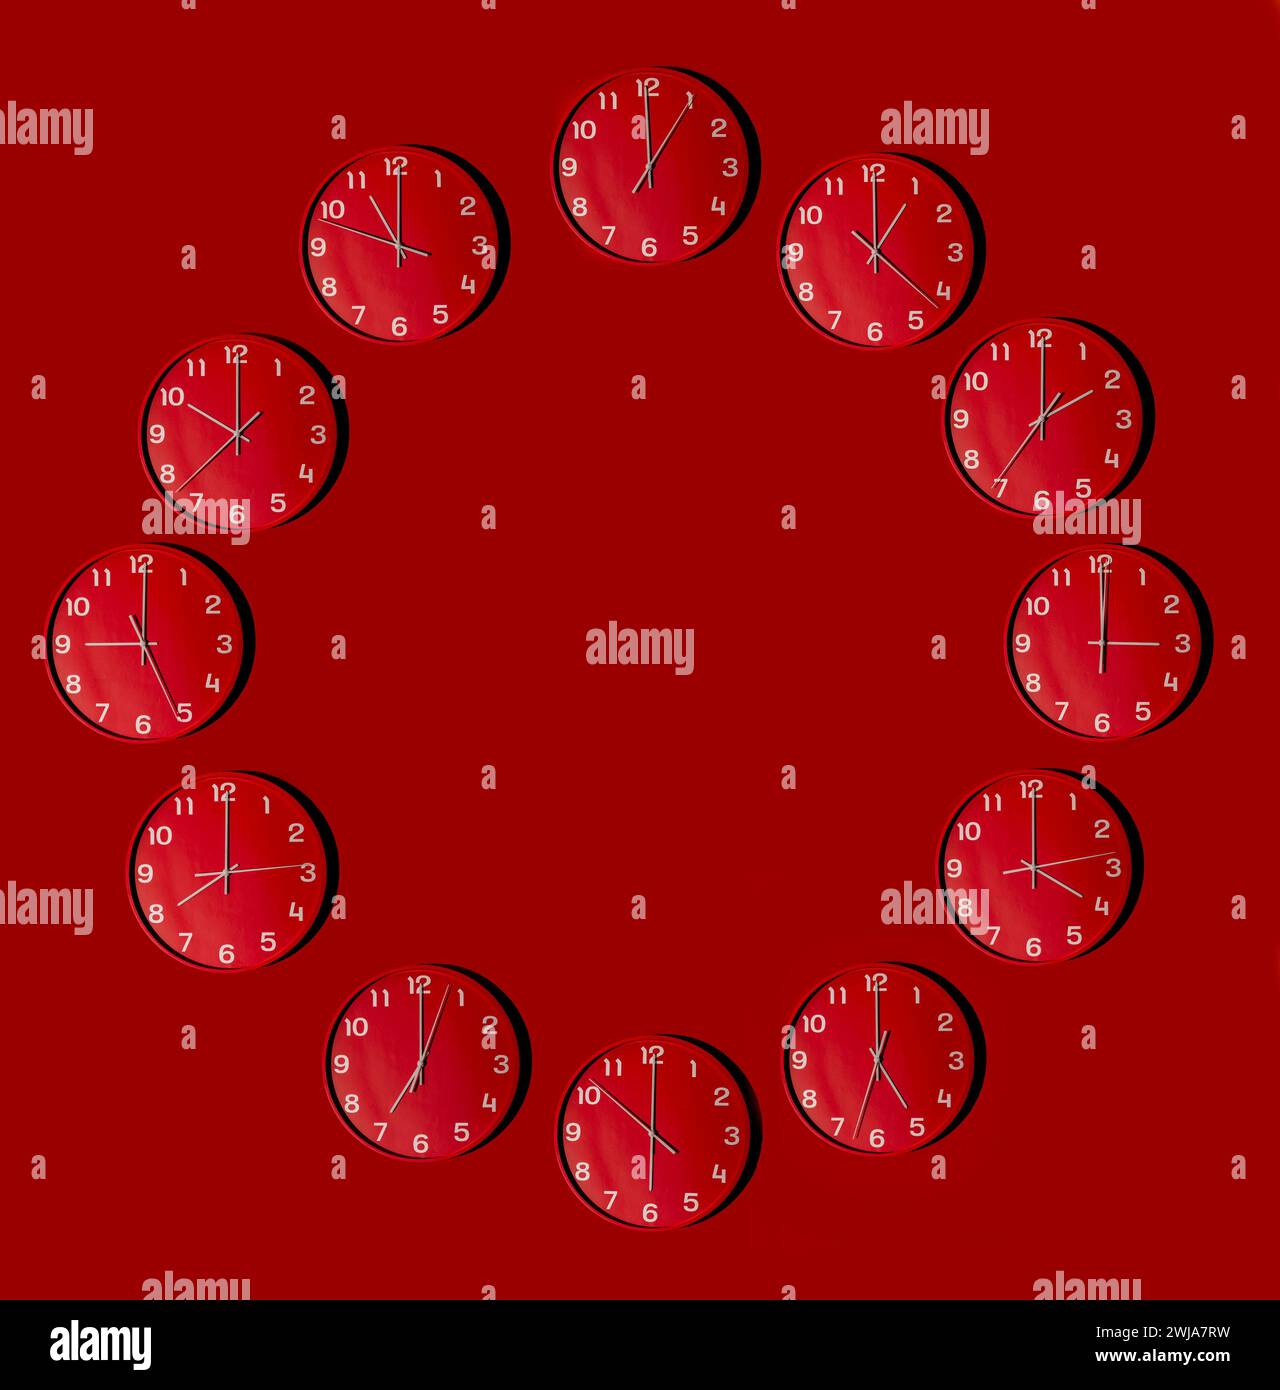 Più orologi da parete disposti in un motivo circolare su uno sfondo rosso vivace, ciascuno con un'ora diversa Foto Stock